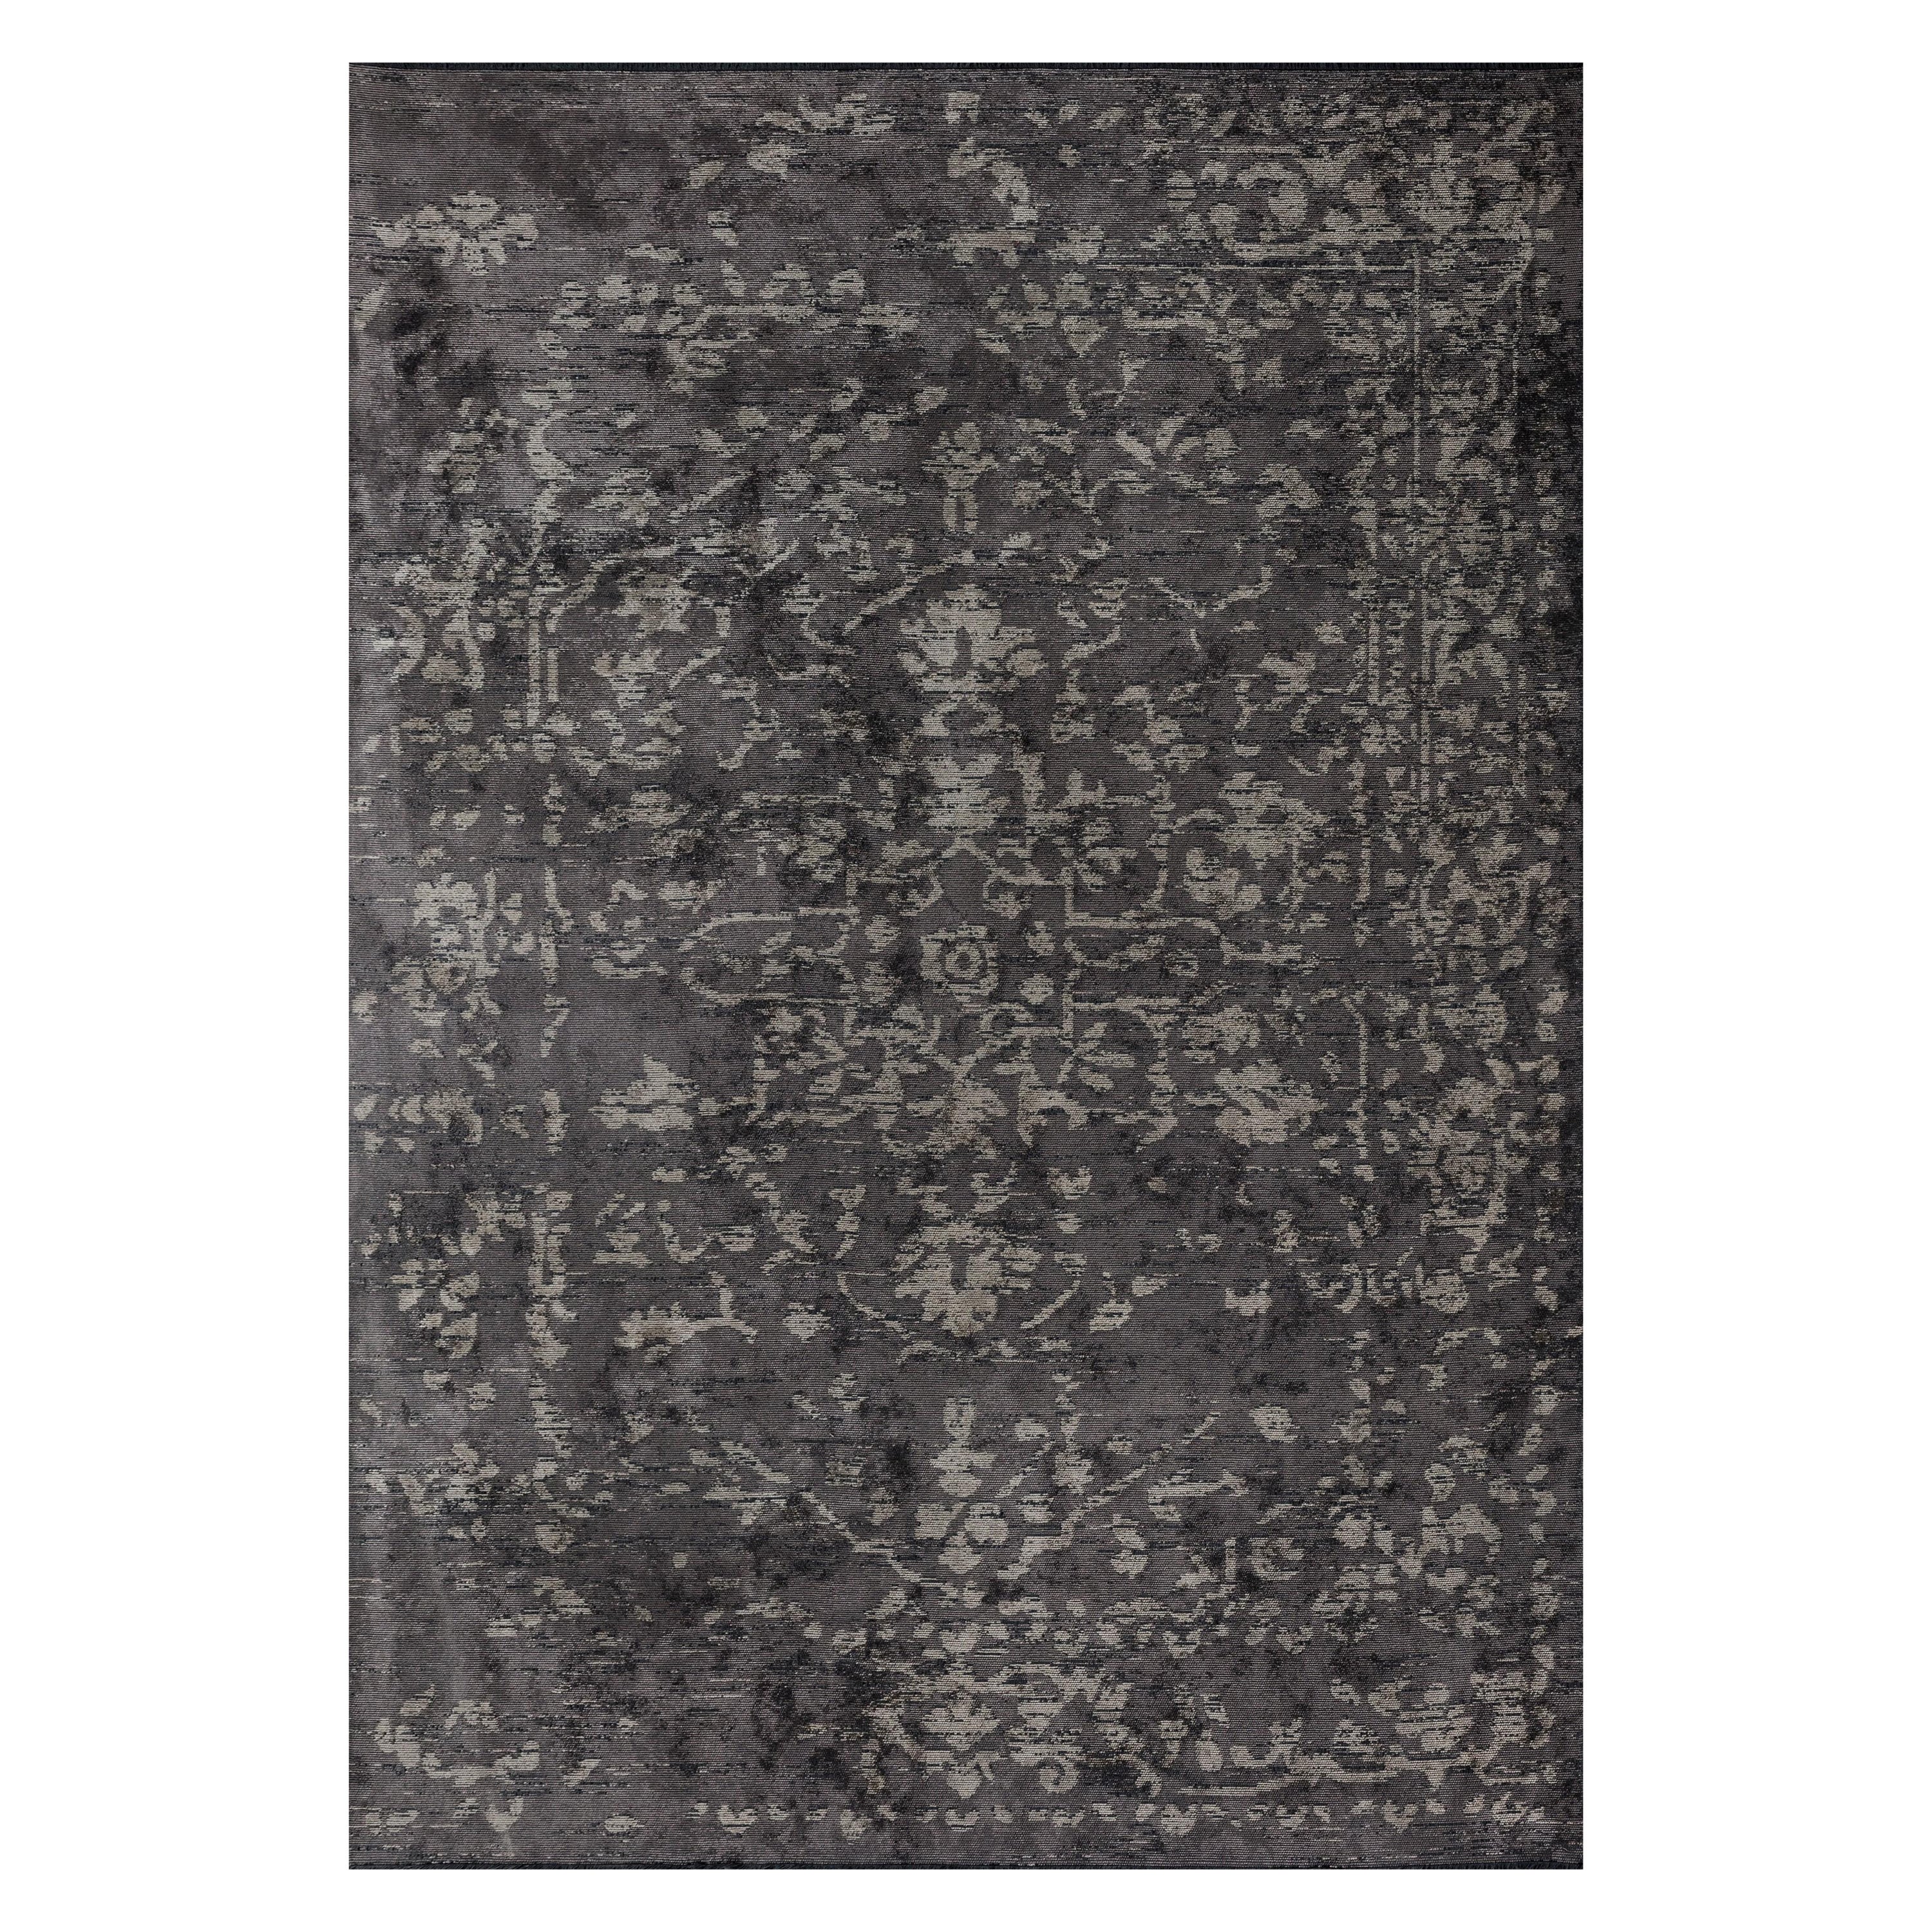 Im Angebot: Traditioneller Orientalischer Luxus-Teppich, handgefertigt,  (Grau)